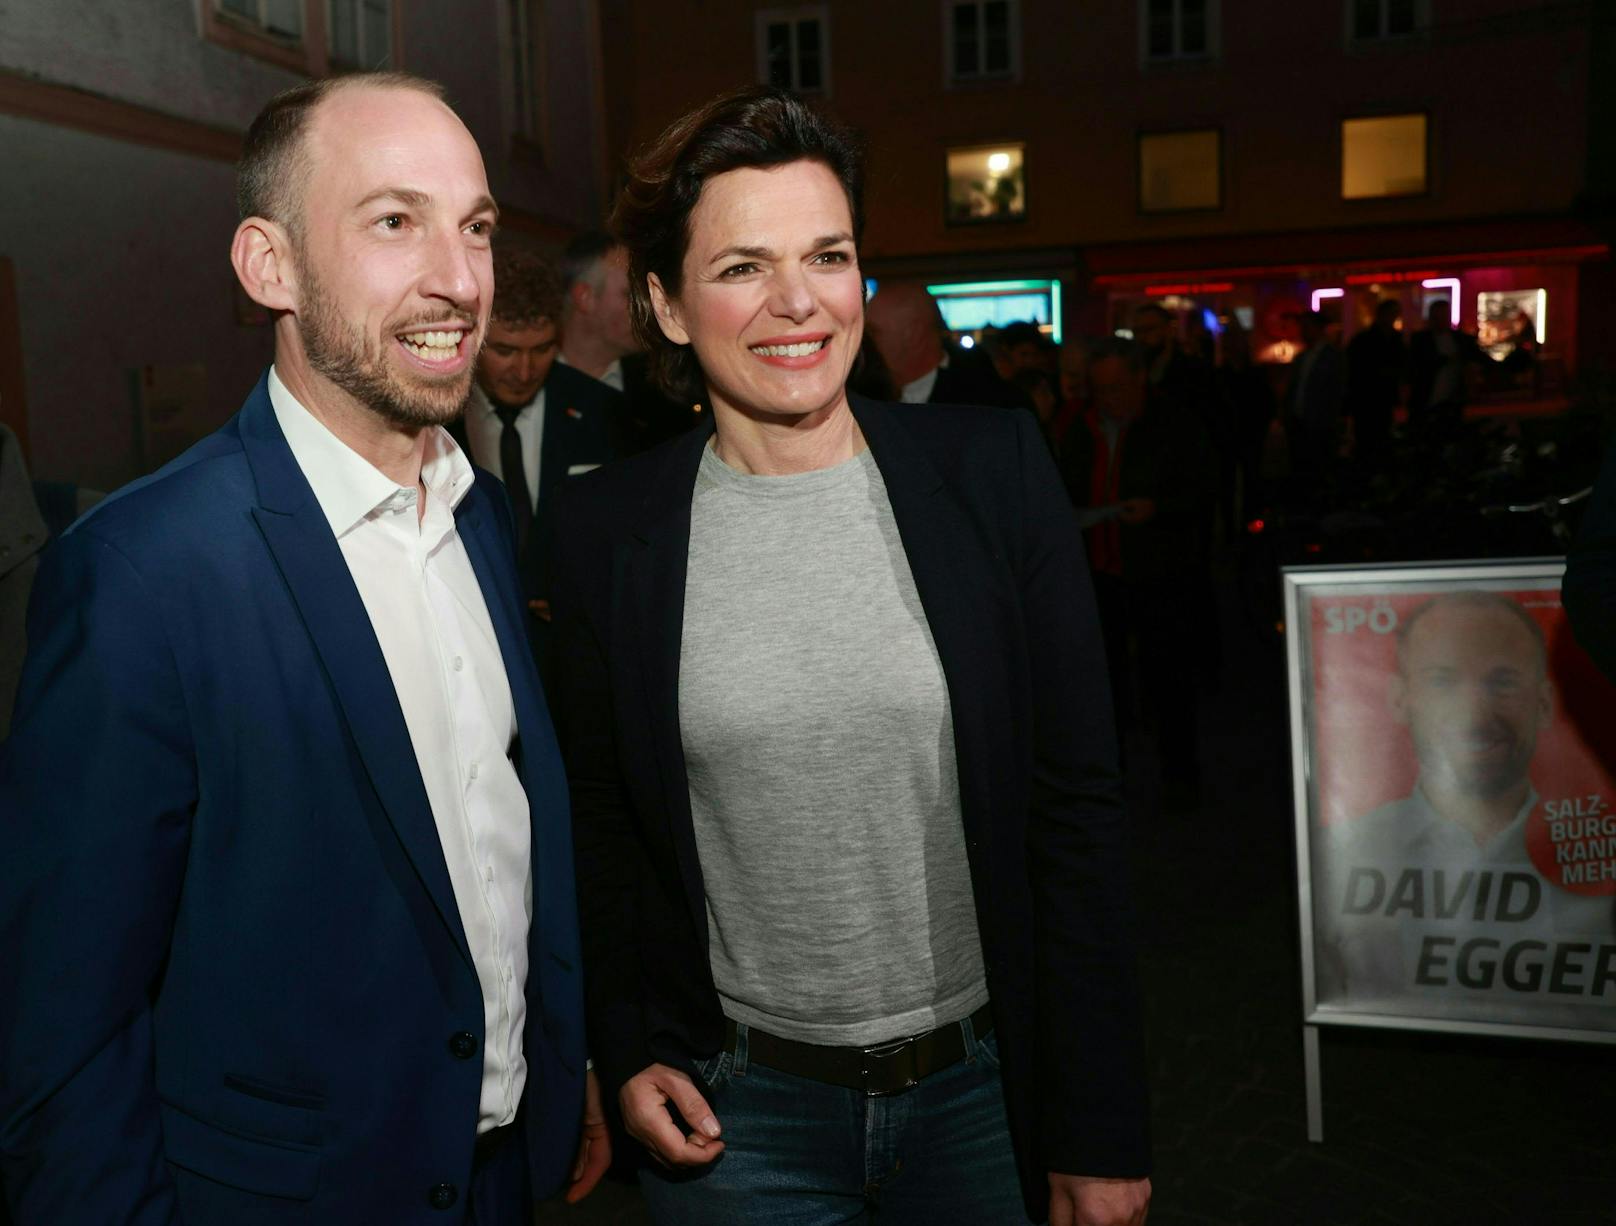 Salzburgs SPÖ-Spitzenkandidat David Egger mit der SPÖ-Bundesvorsitzenden Pamela Rendi Wagner.